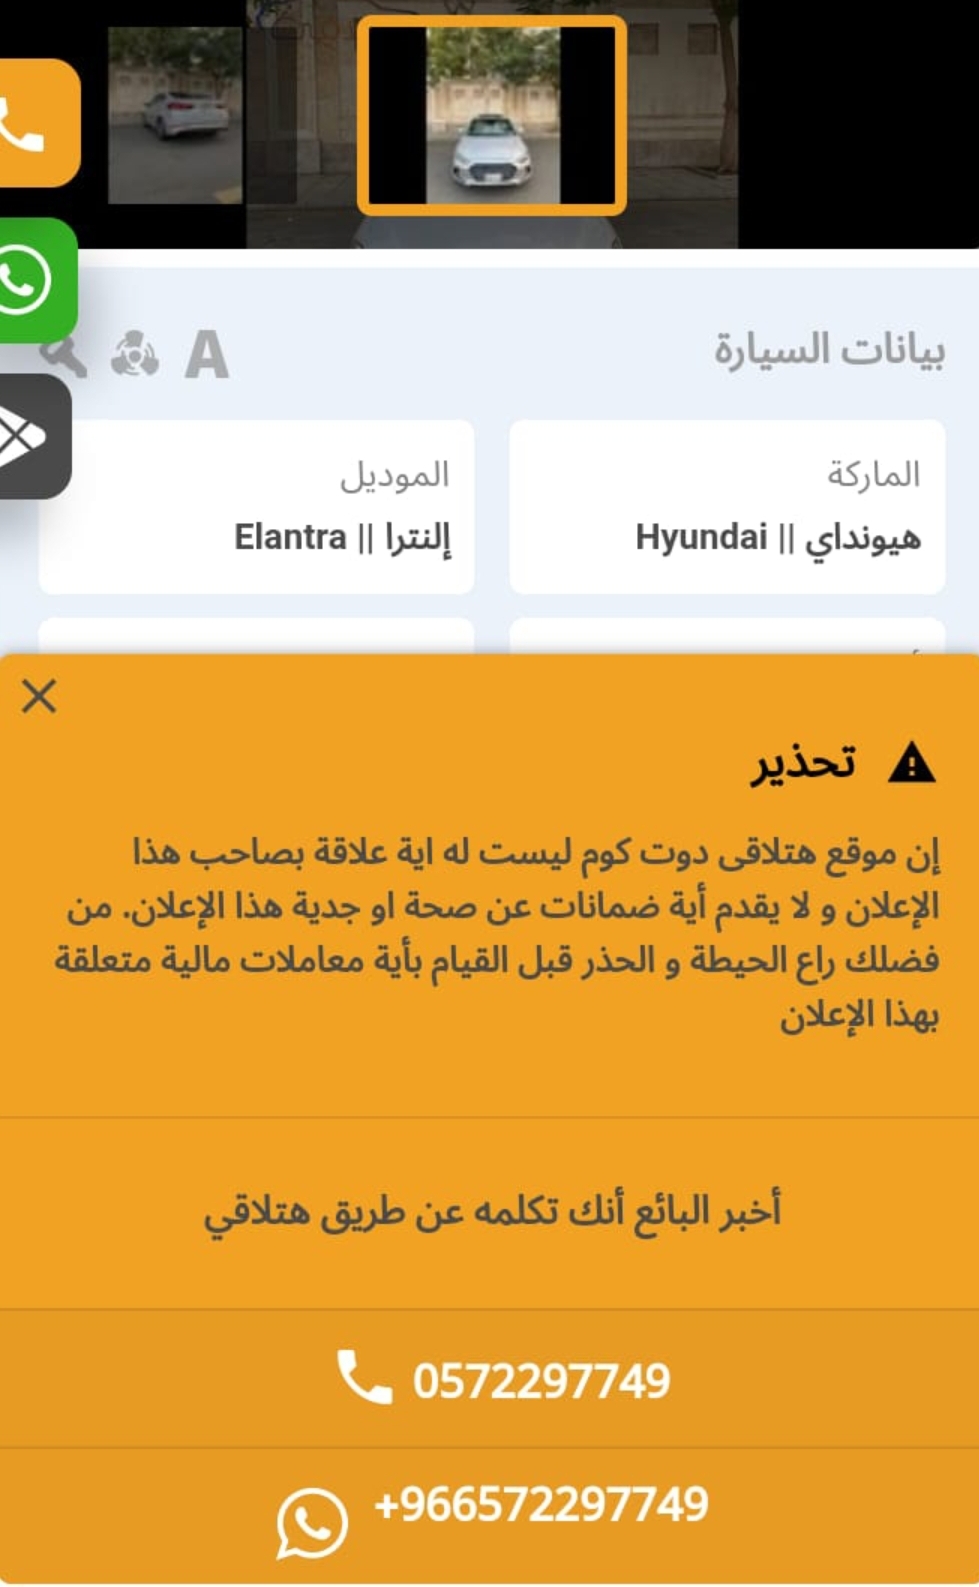 Screenshot ٢٠٢٣٠٥٢٠ ٢٢٤٥٢٣ WhatsApp - مدونة التقنية العربية